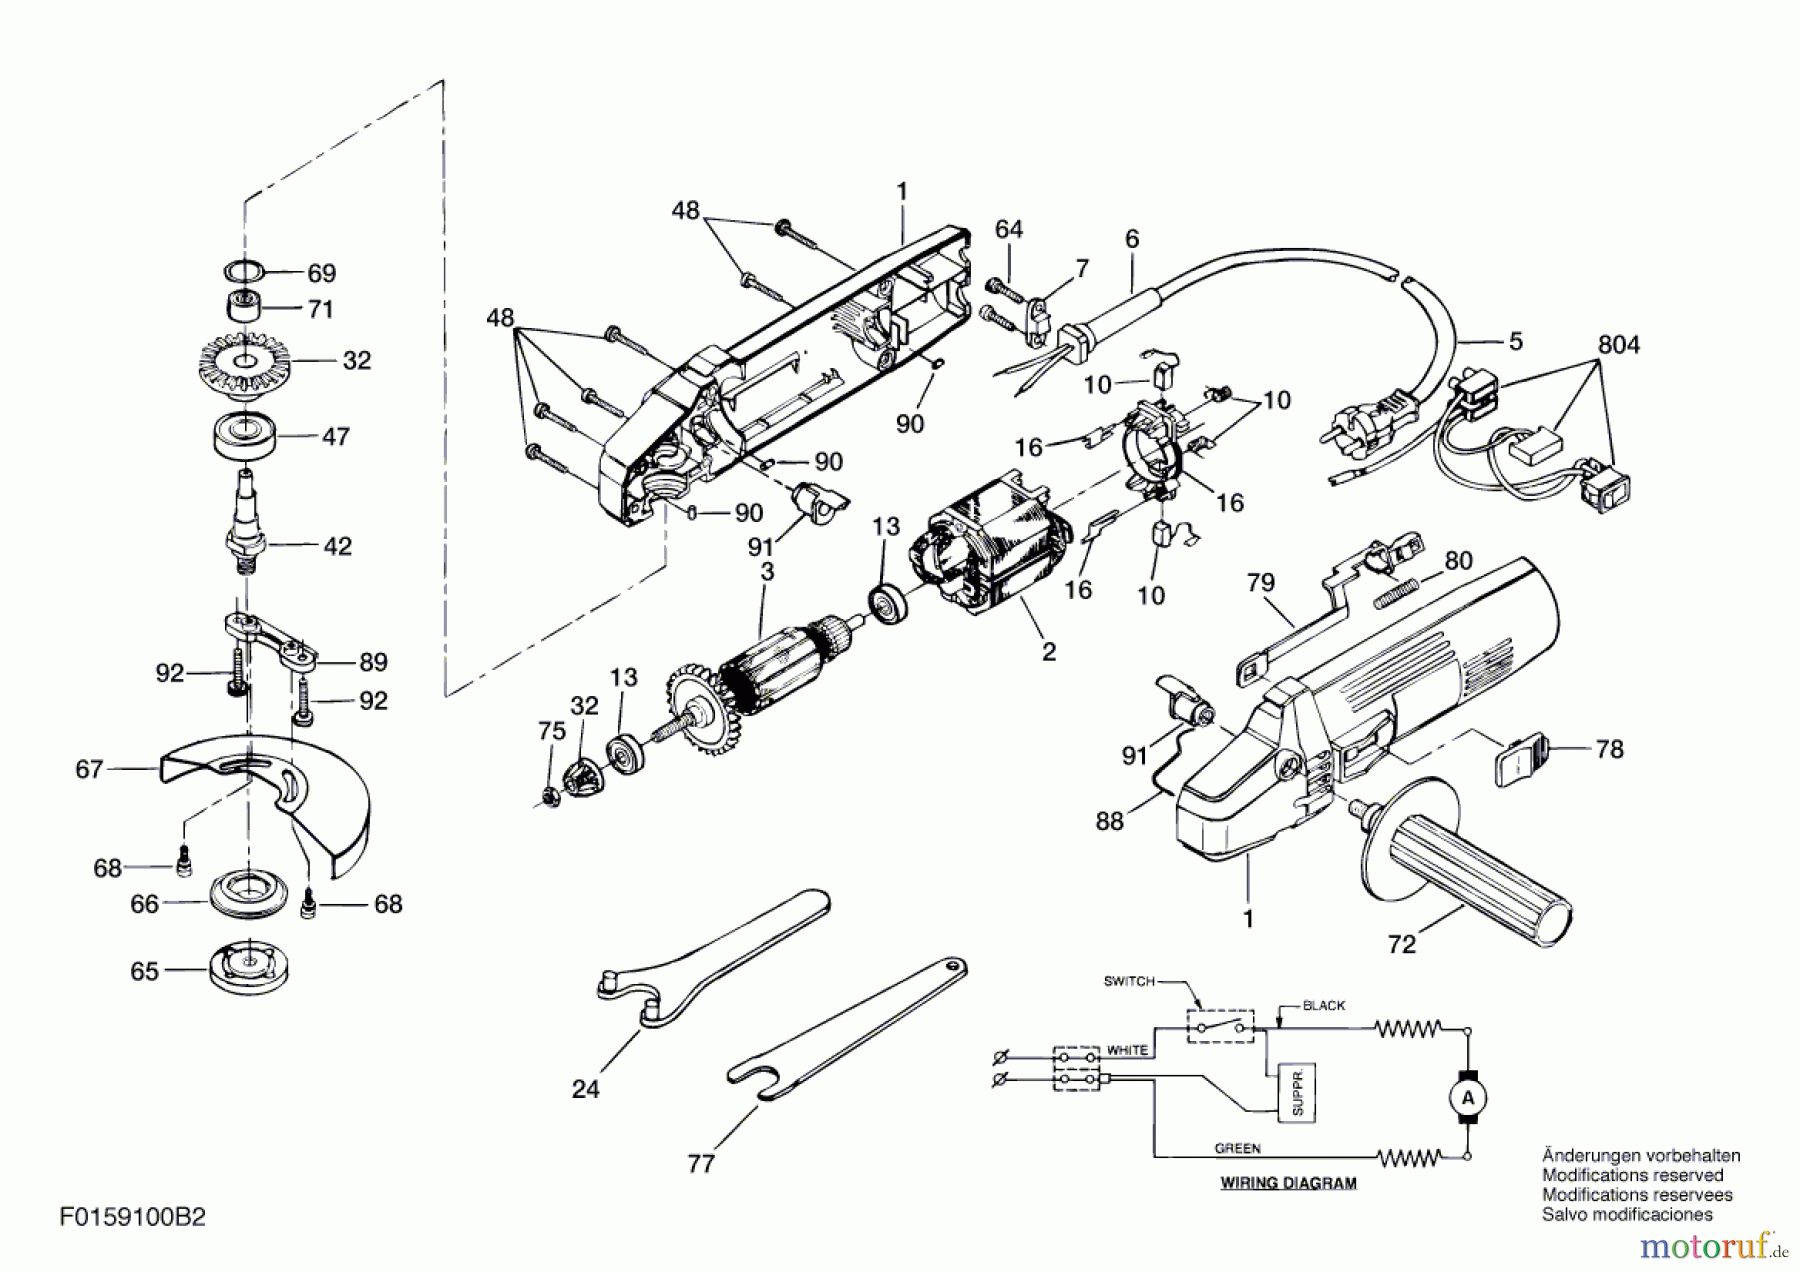  Bosch Werkzeug Winkelschleifer 9100 H2 Seite 1